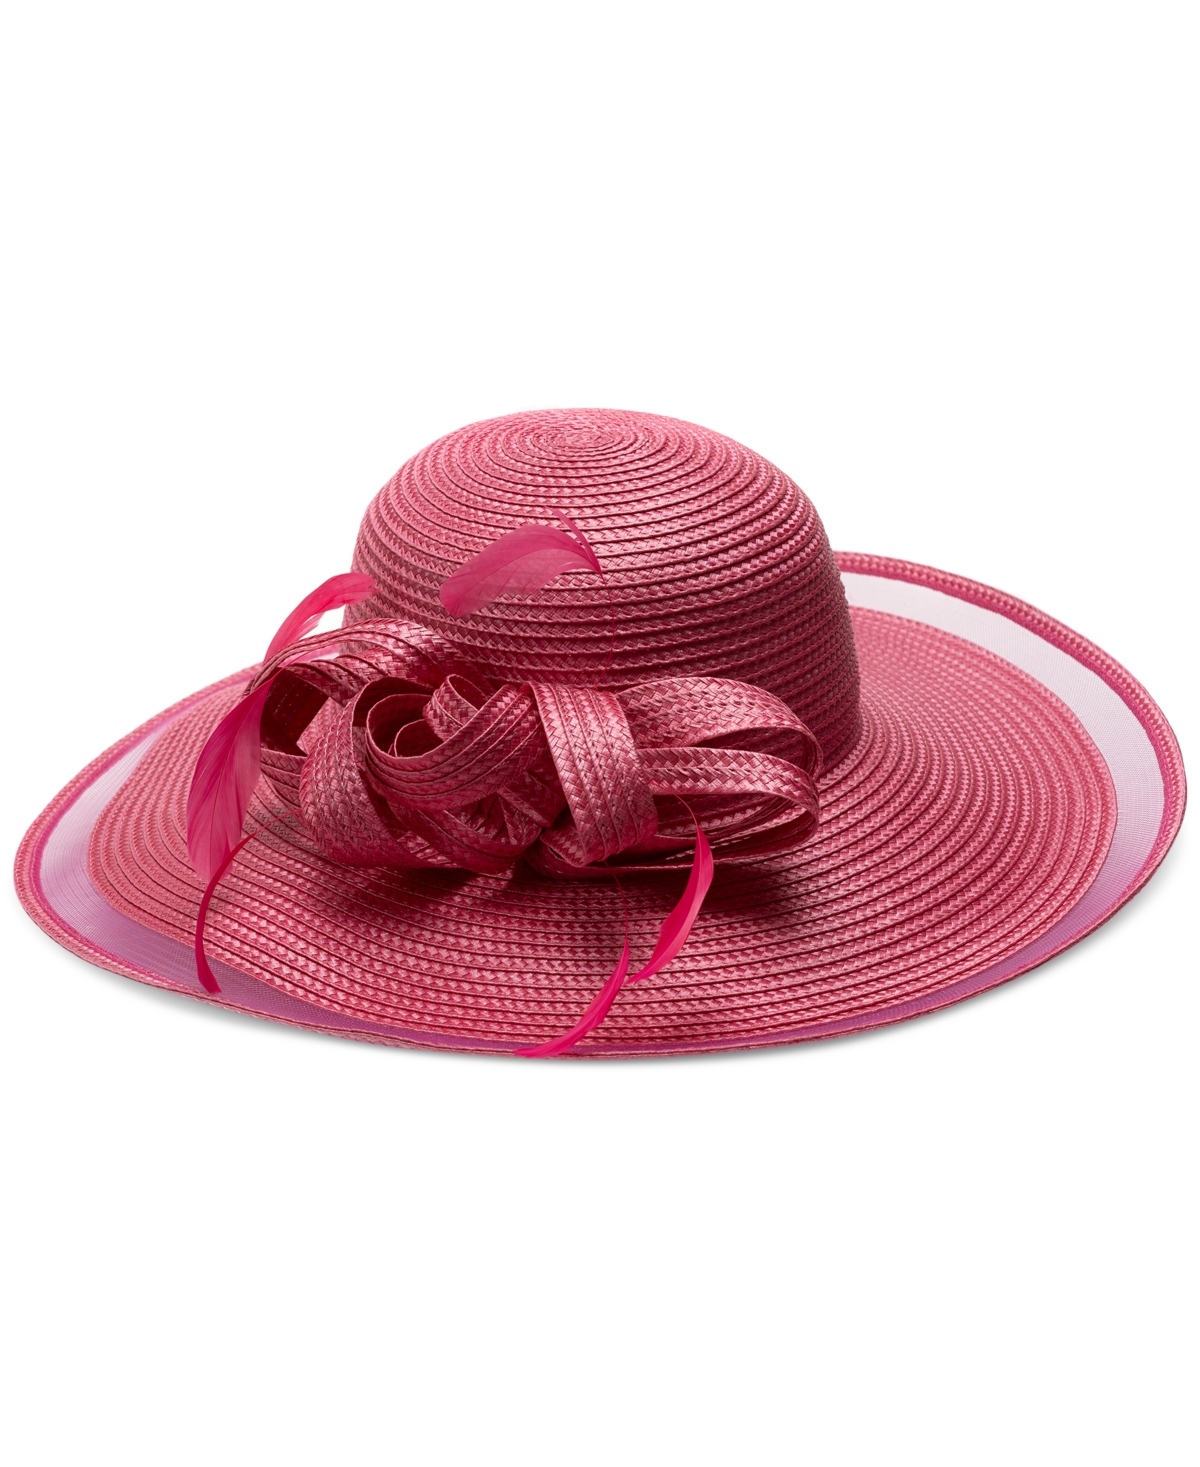 Women's Sheer Ruffled Brim Dressy Hat - Fuchsia